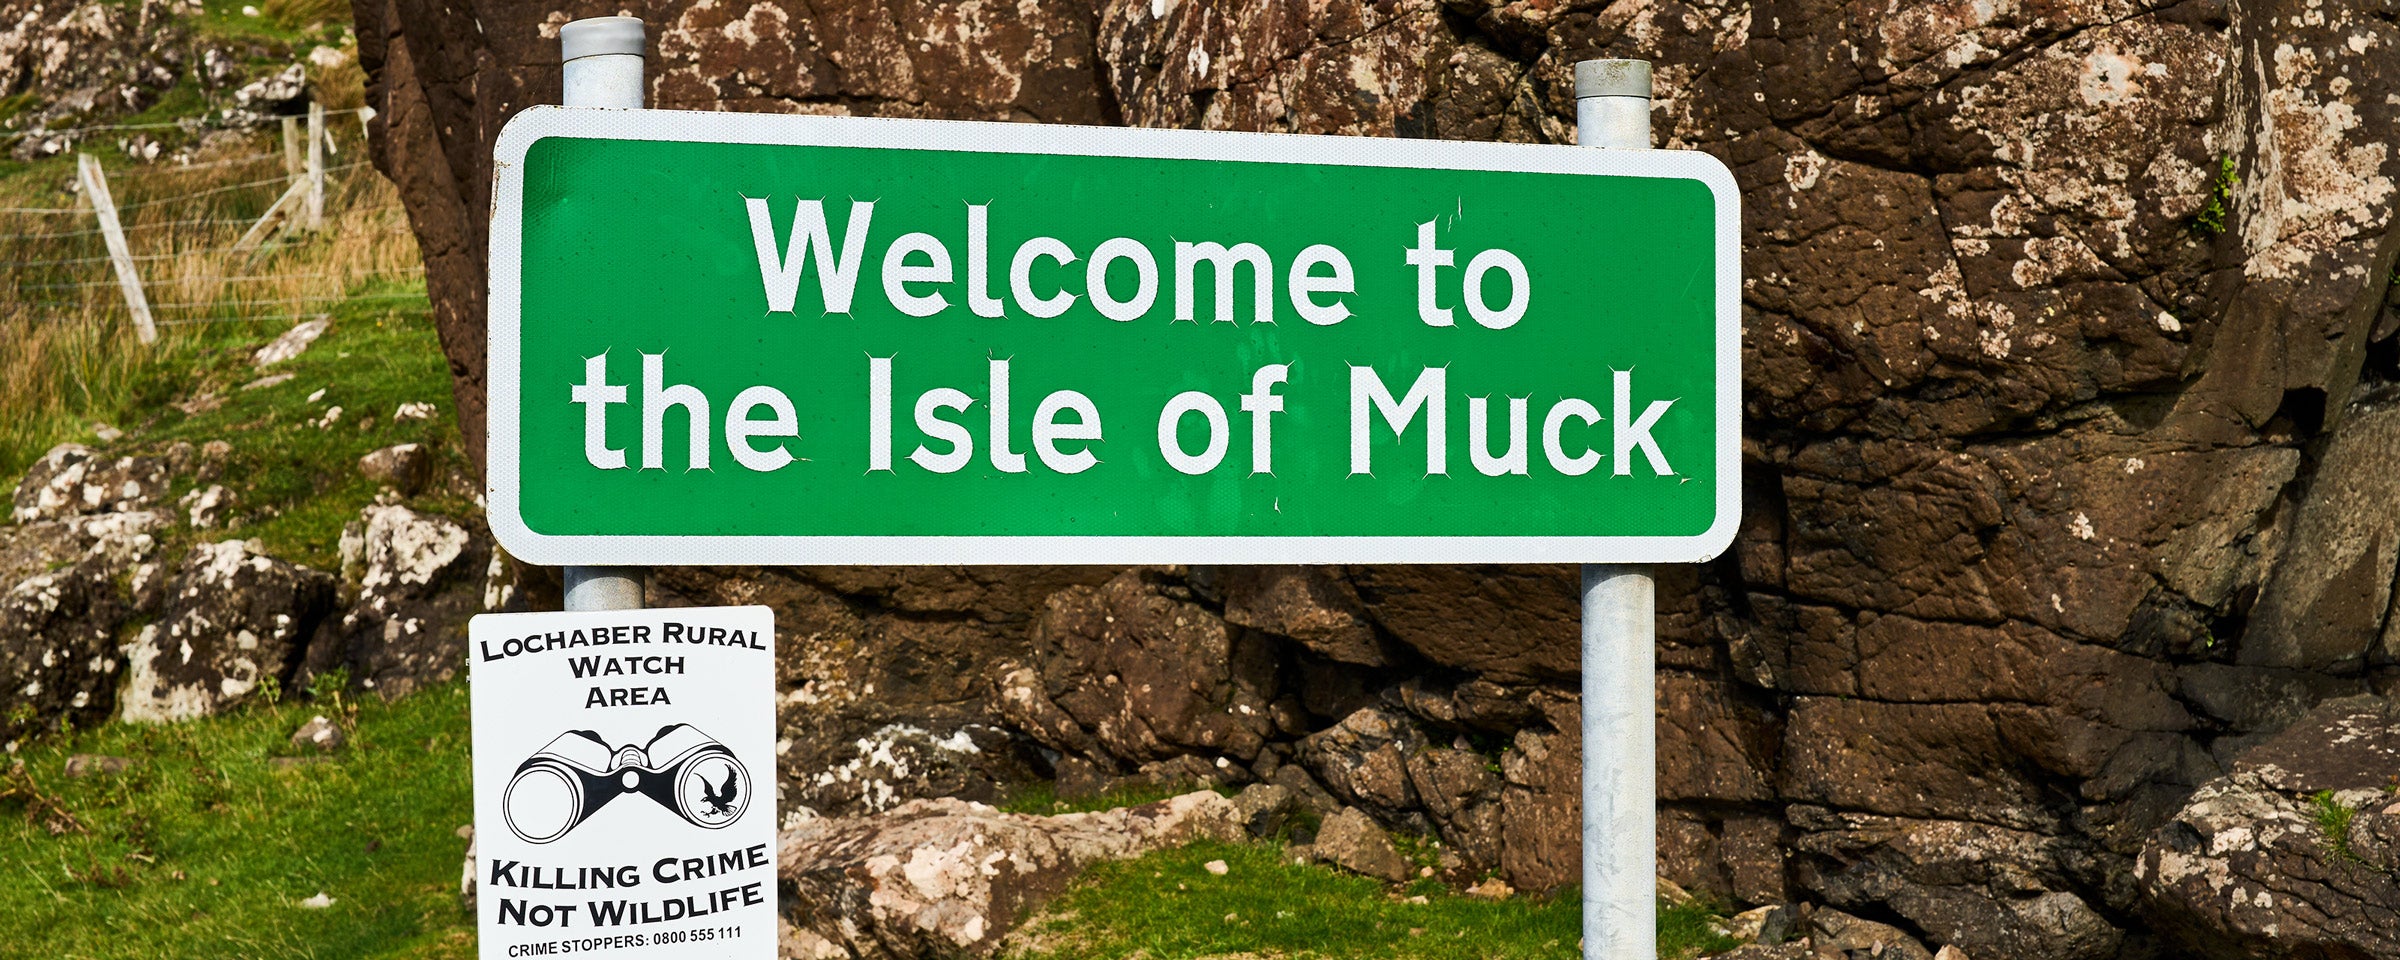 Ein grünes Schild mit der Aufschrift “Welcome to the Isle of Muck” vor Felsen und Geröll